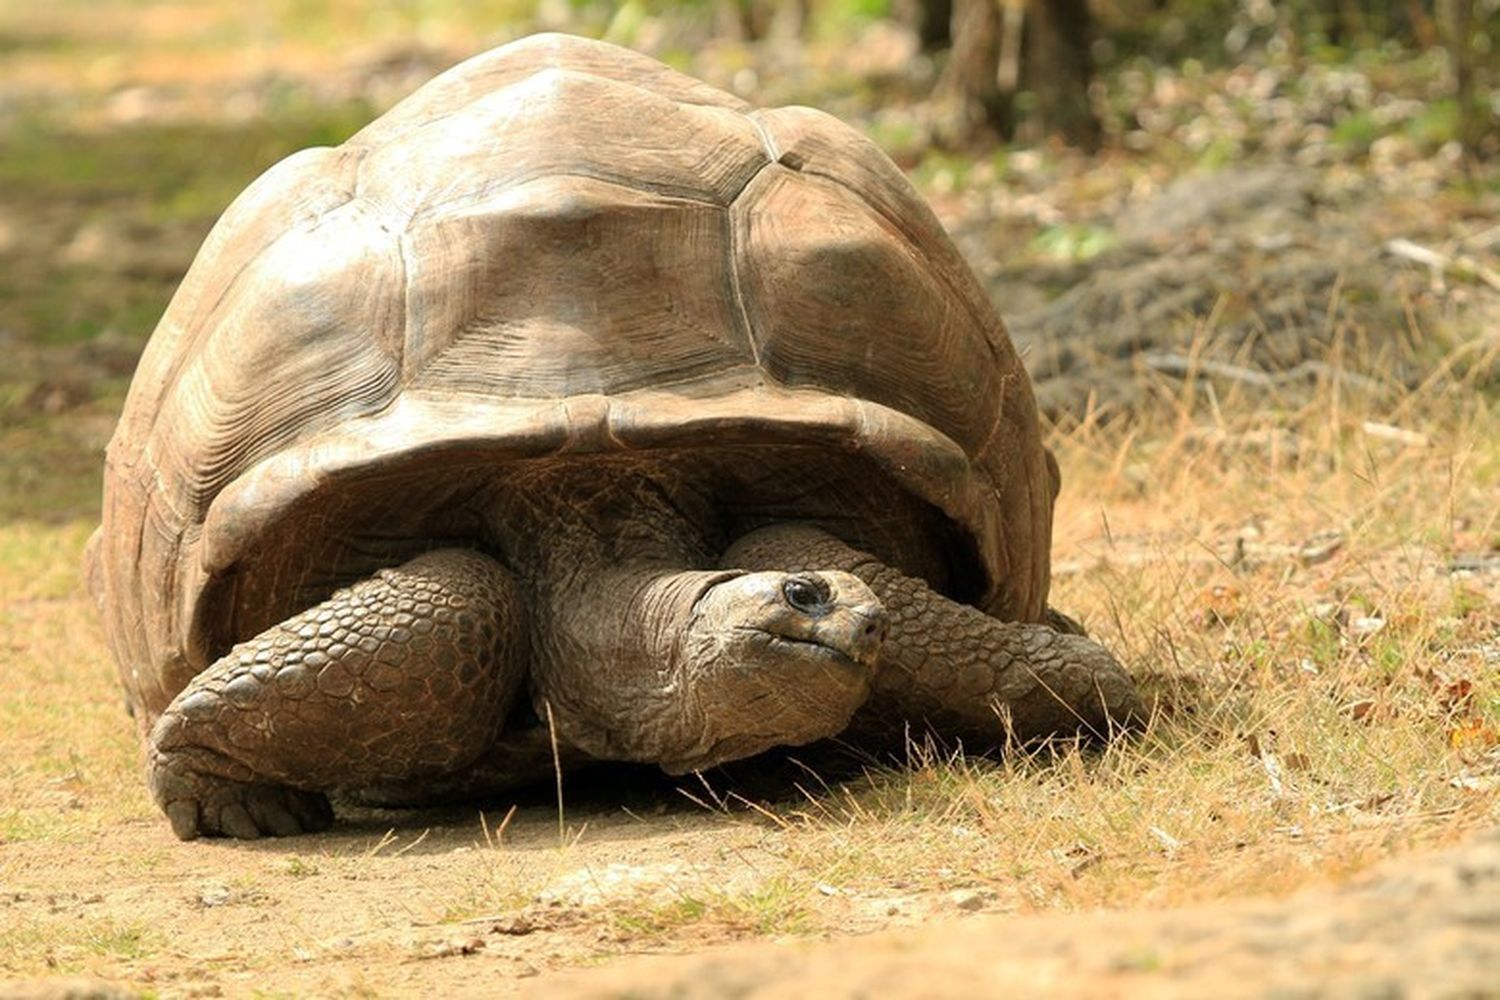 Maurice et Rodrigues avaient chacun deux espèces de tortues endémiques. Elles ont toutes disparues depuis le XIXe siècle, mangées par l’humain et les animaux domestiques (cochons, rats, chats, etc.) importés par ces derniers au moment de la colonisation. Aujourd’hui, la seule espèce que l’on trouve encore dans l’archipel des Mascareignes est l’espèce de tortue seychelloise. 